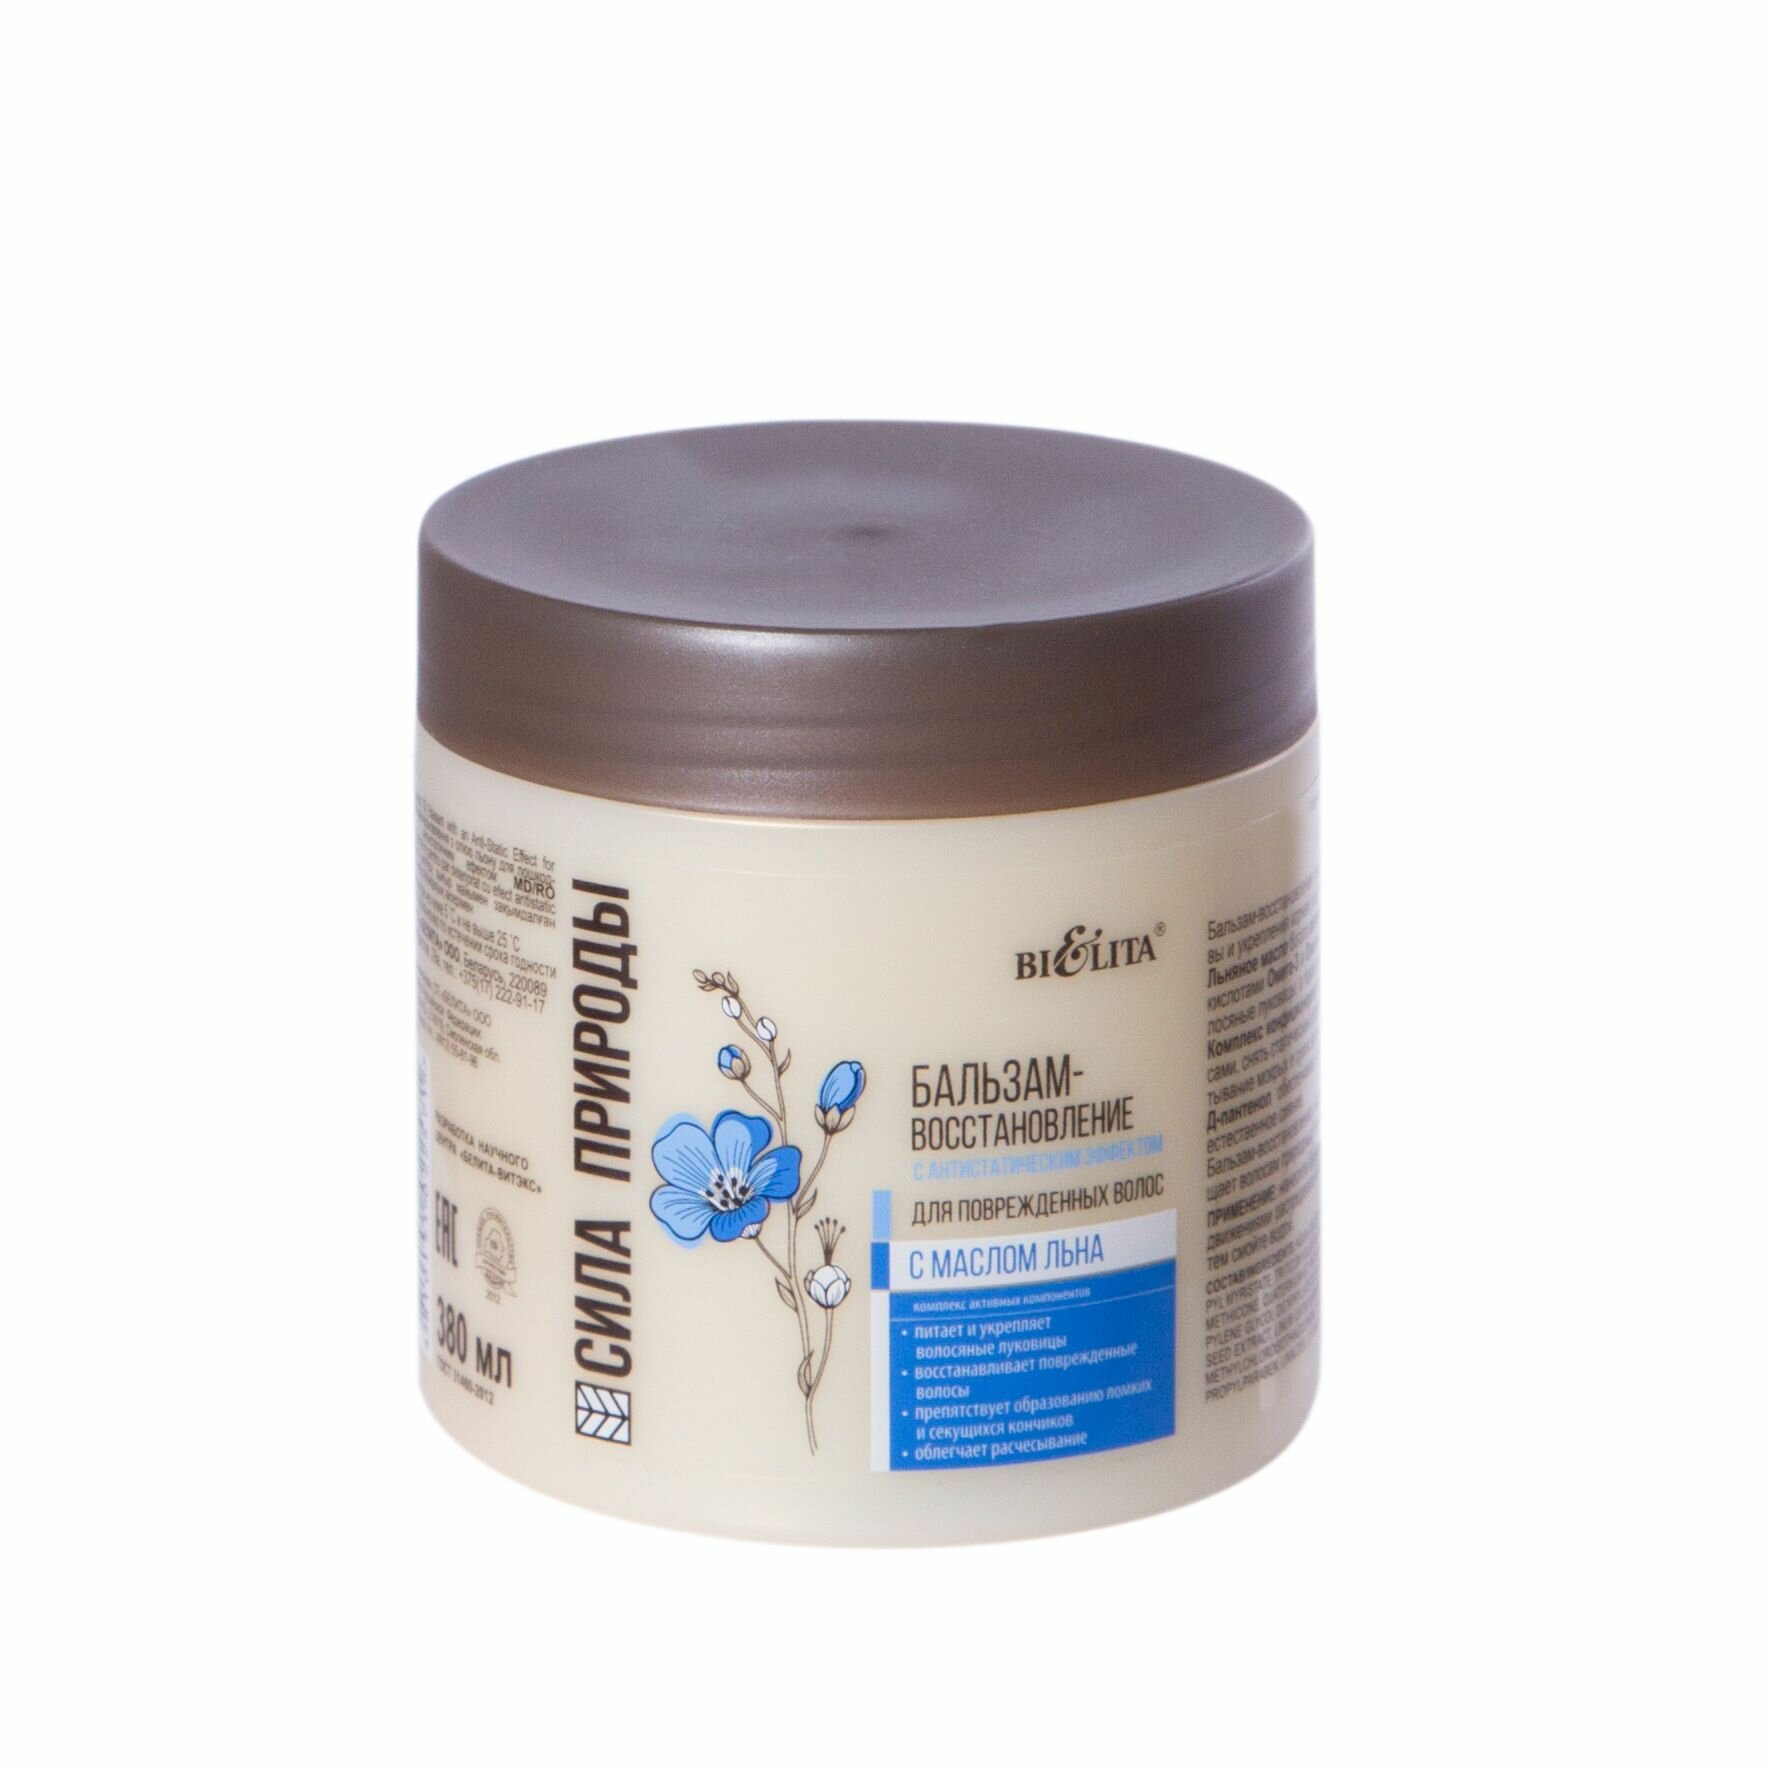 Белита Бальзам-восстановление сила природы с маслом льна для поврежденных волос с антистатическим эффектом, 380 мл